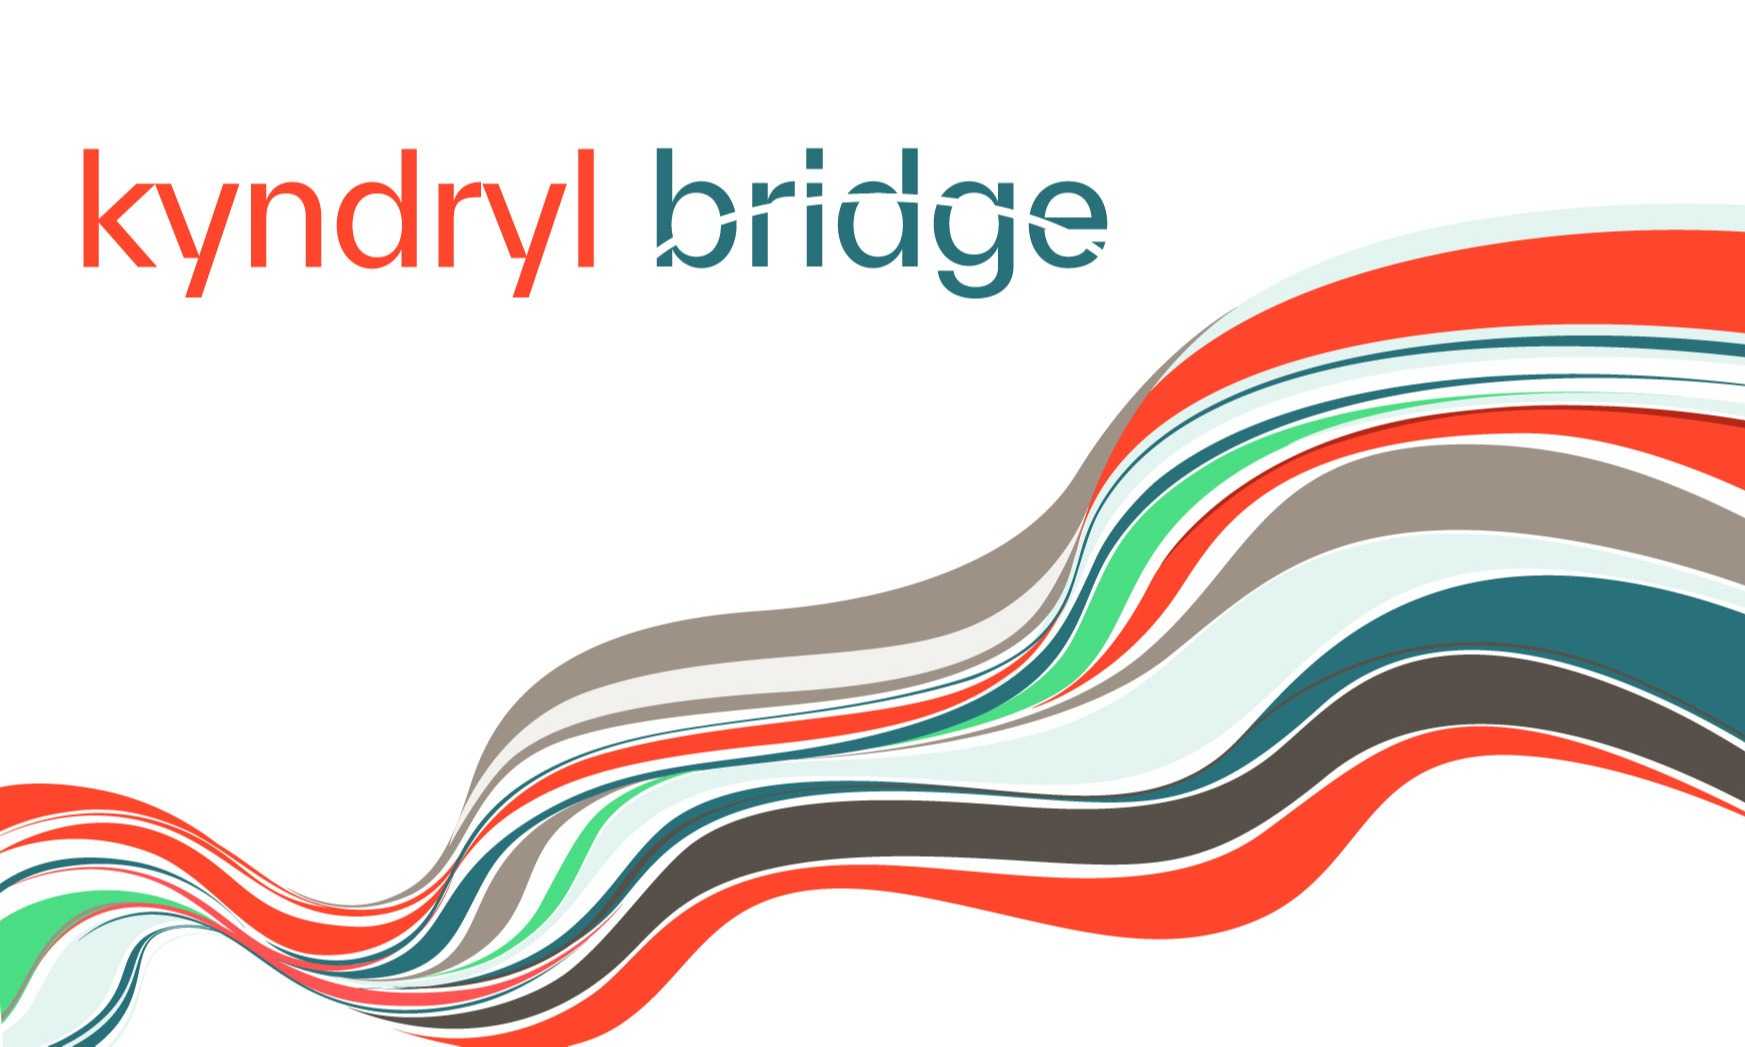 Kyndryl Bridge Jadi Platform Baru Kebutuhan TI Dan Bisnis